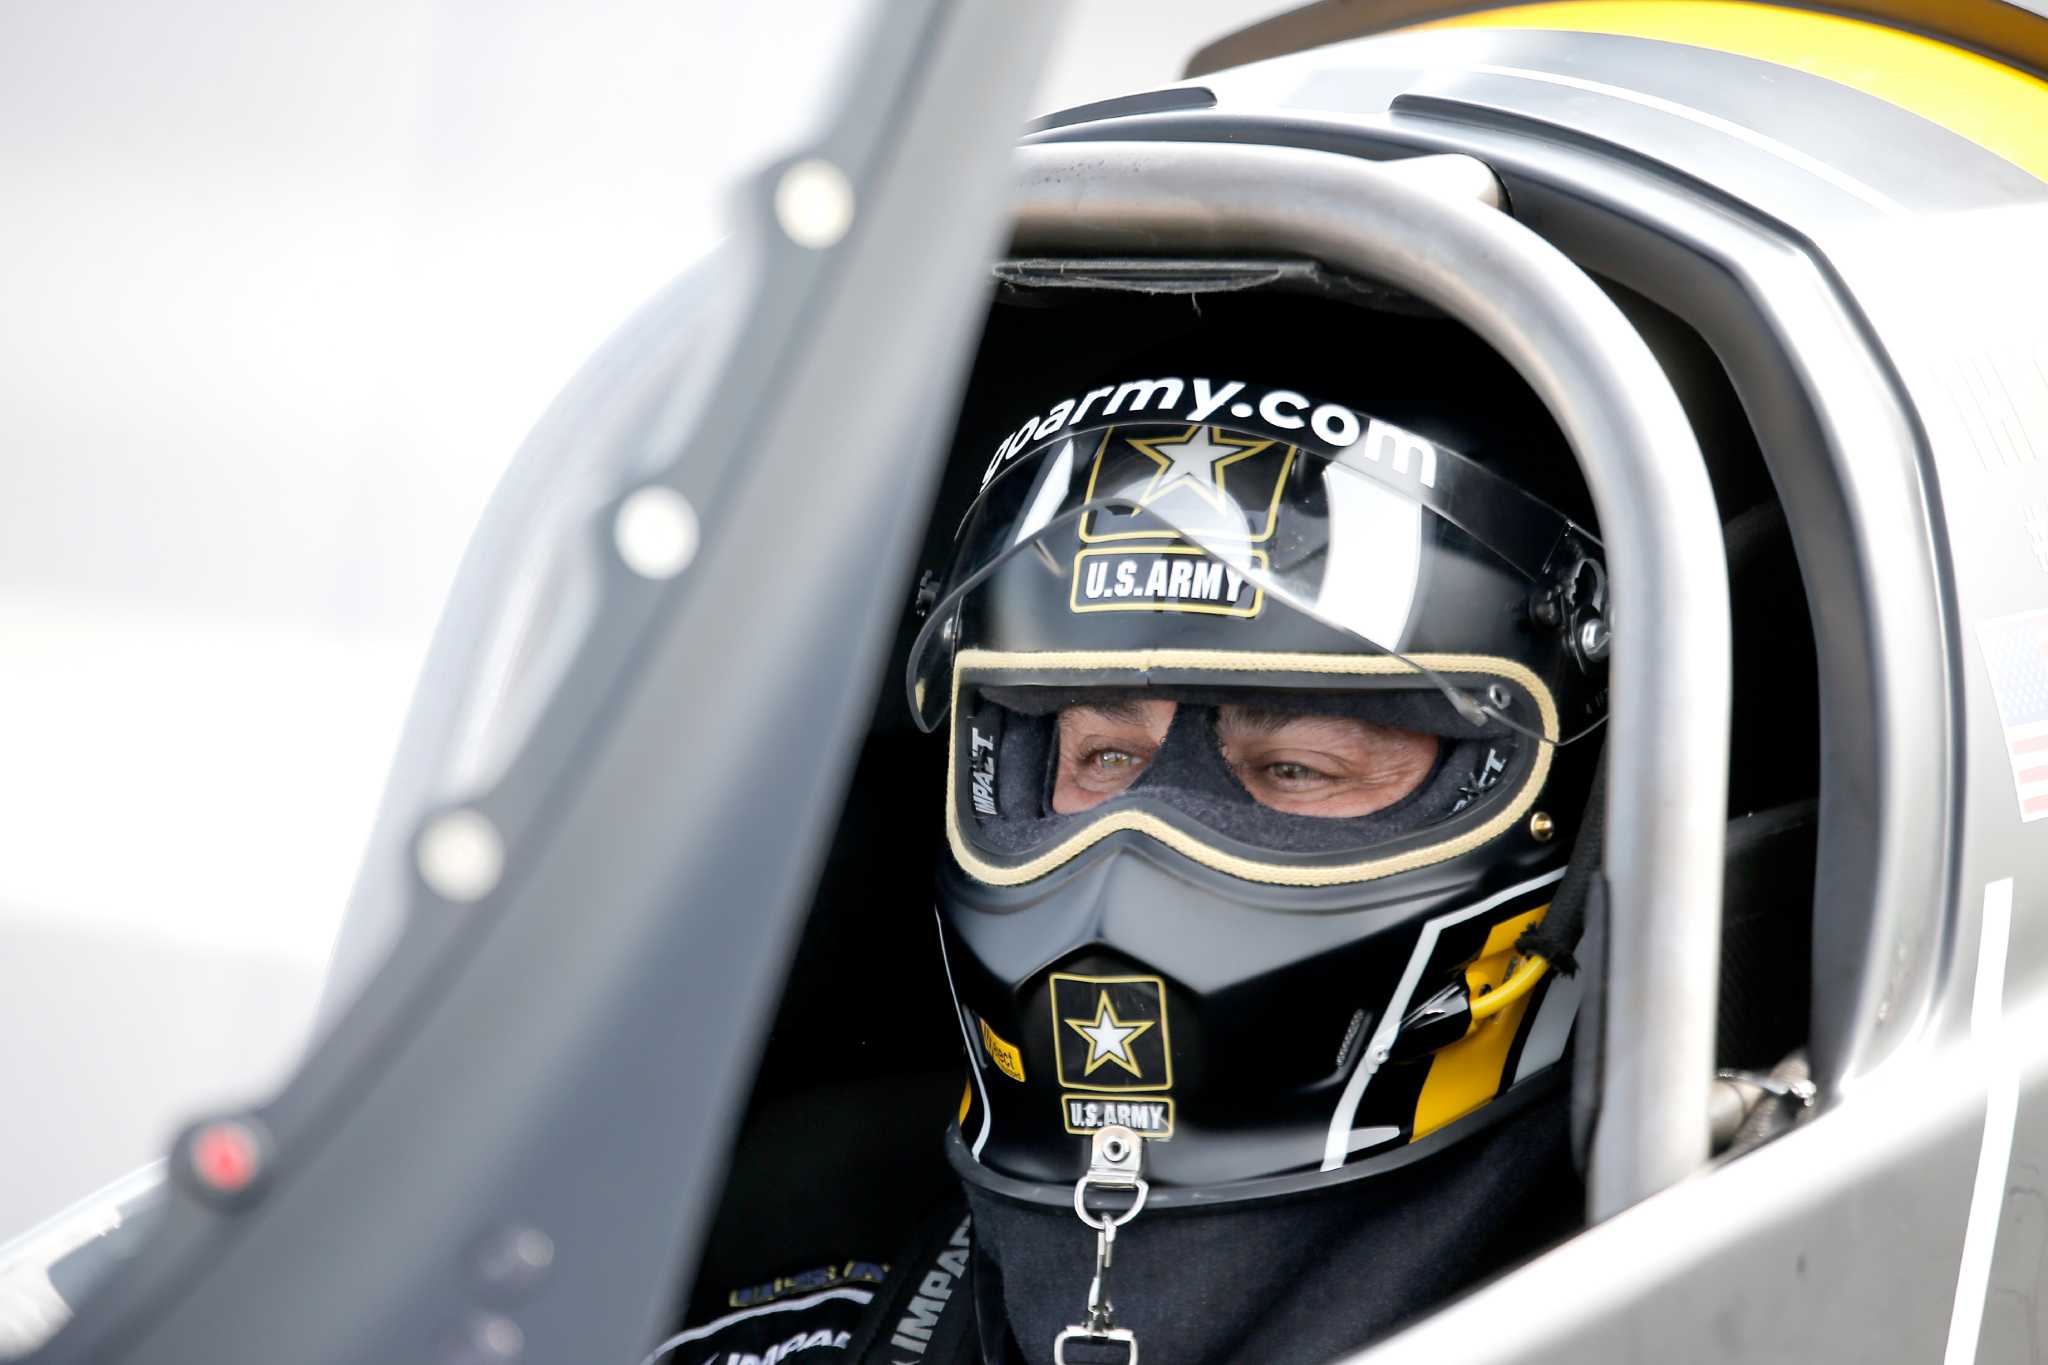 Top Fuel driver Tony Schumacher grabs No. 8 spot at - Chron.com